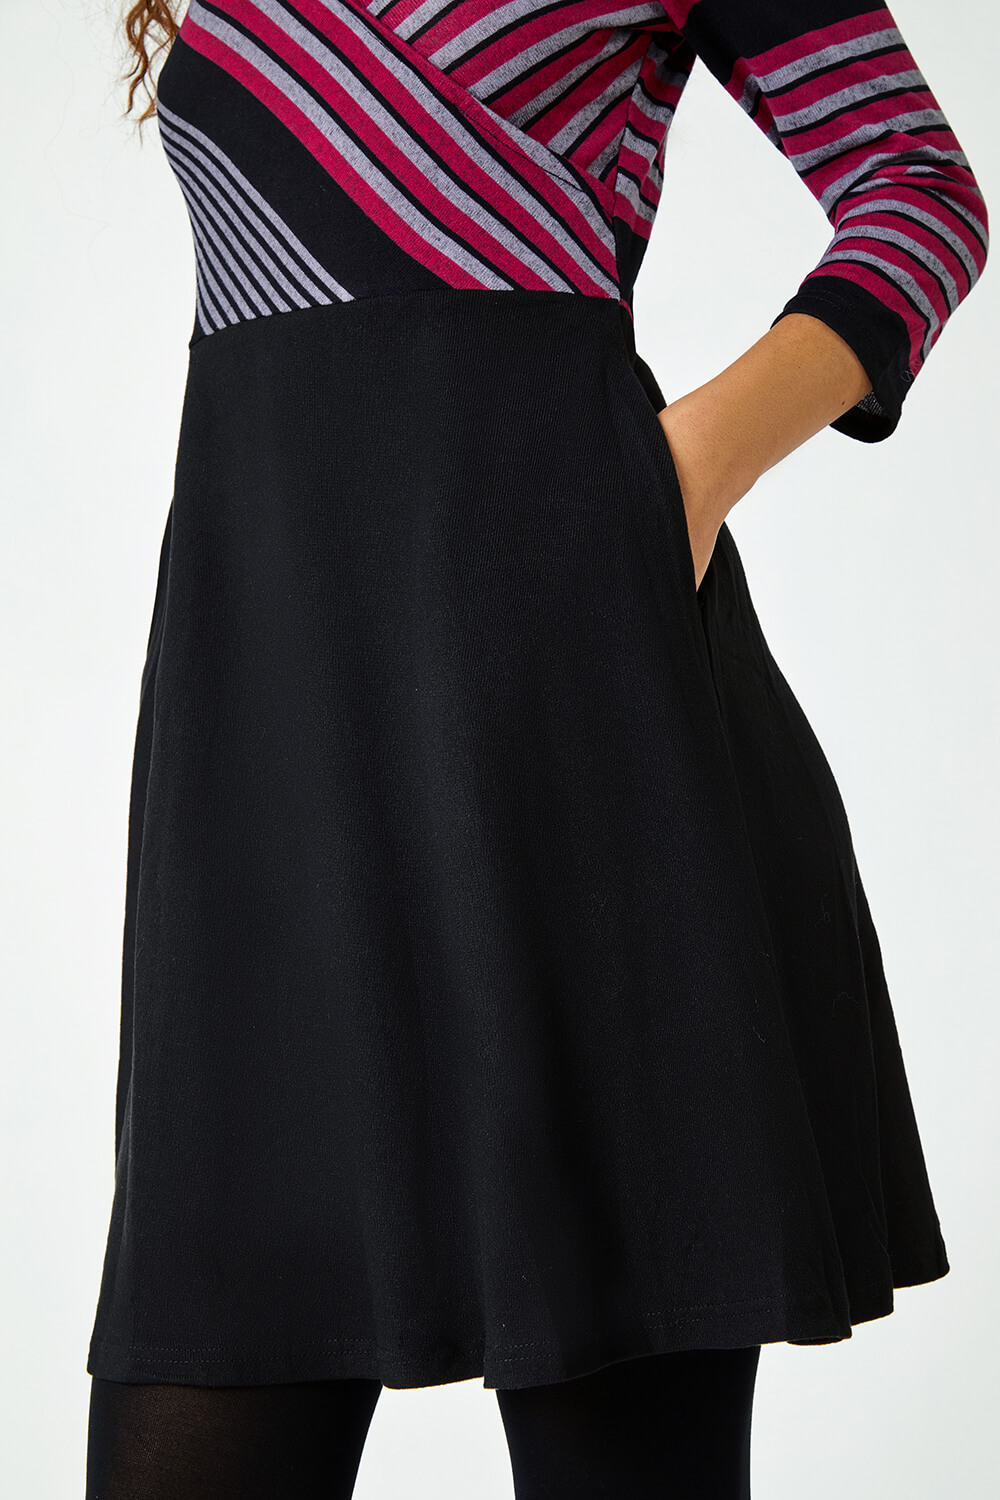 Wine Stripe Print Wrap Stretch Dress, Image 5 of 5